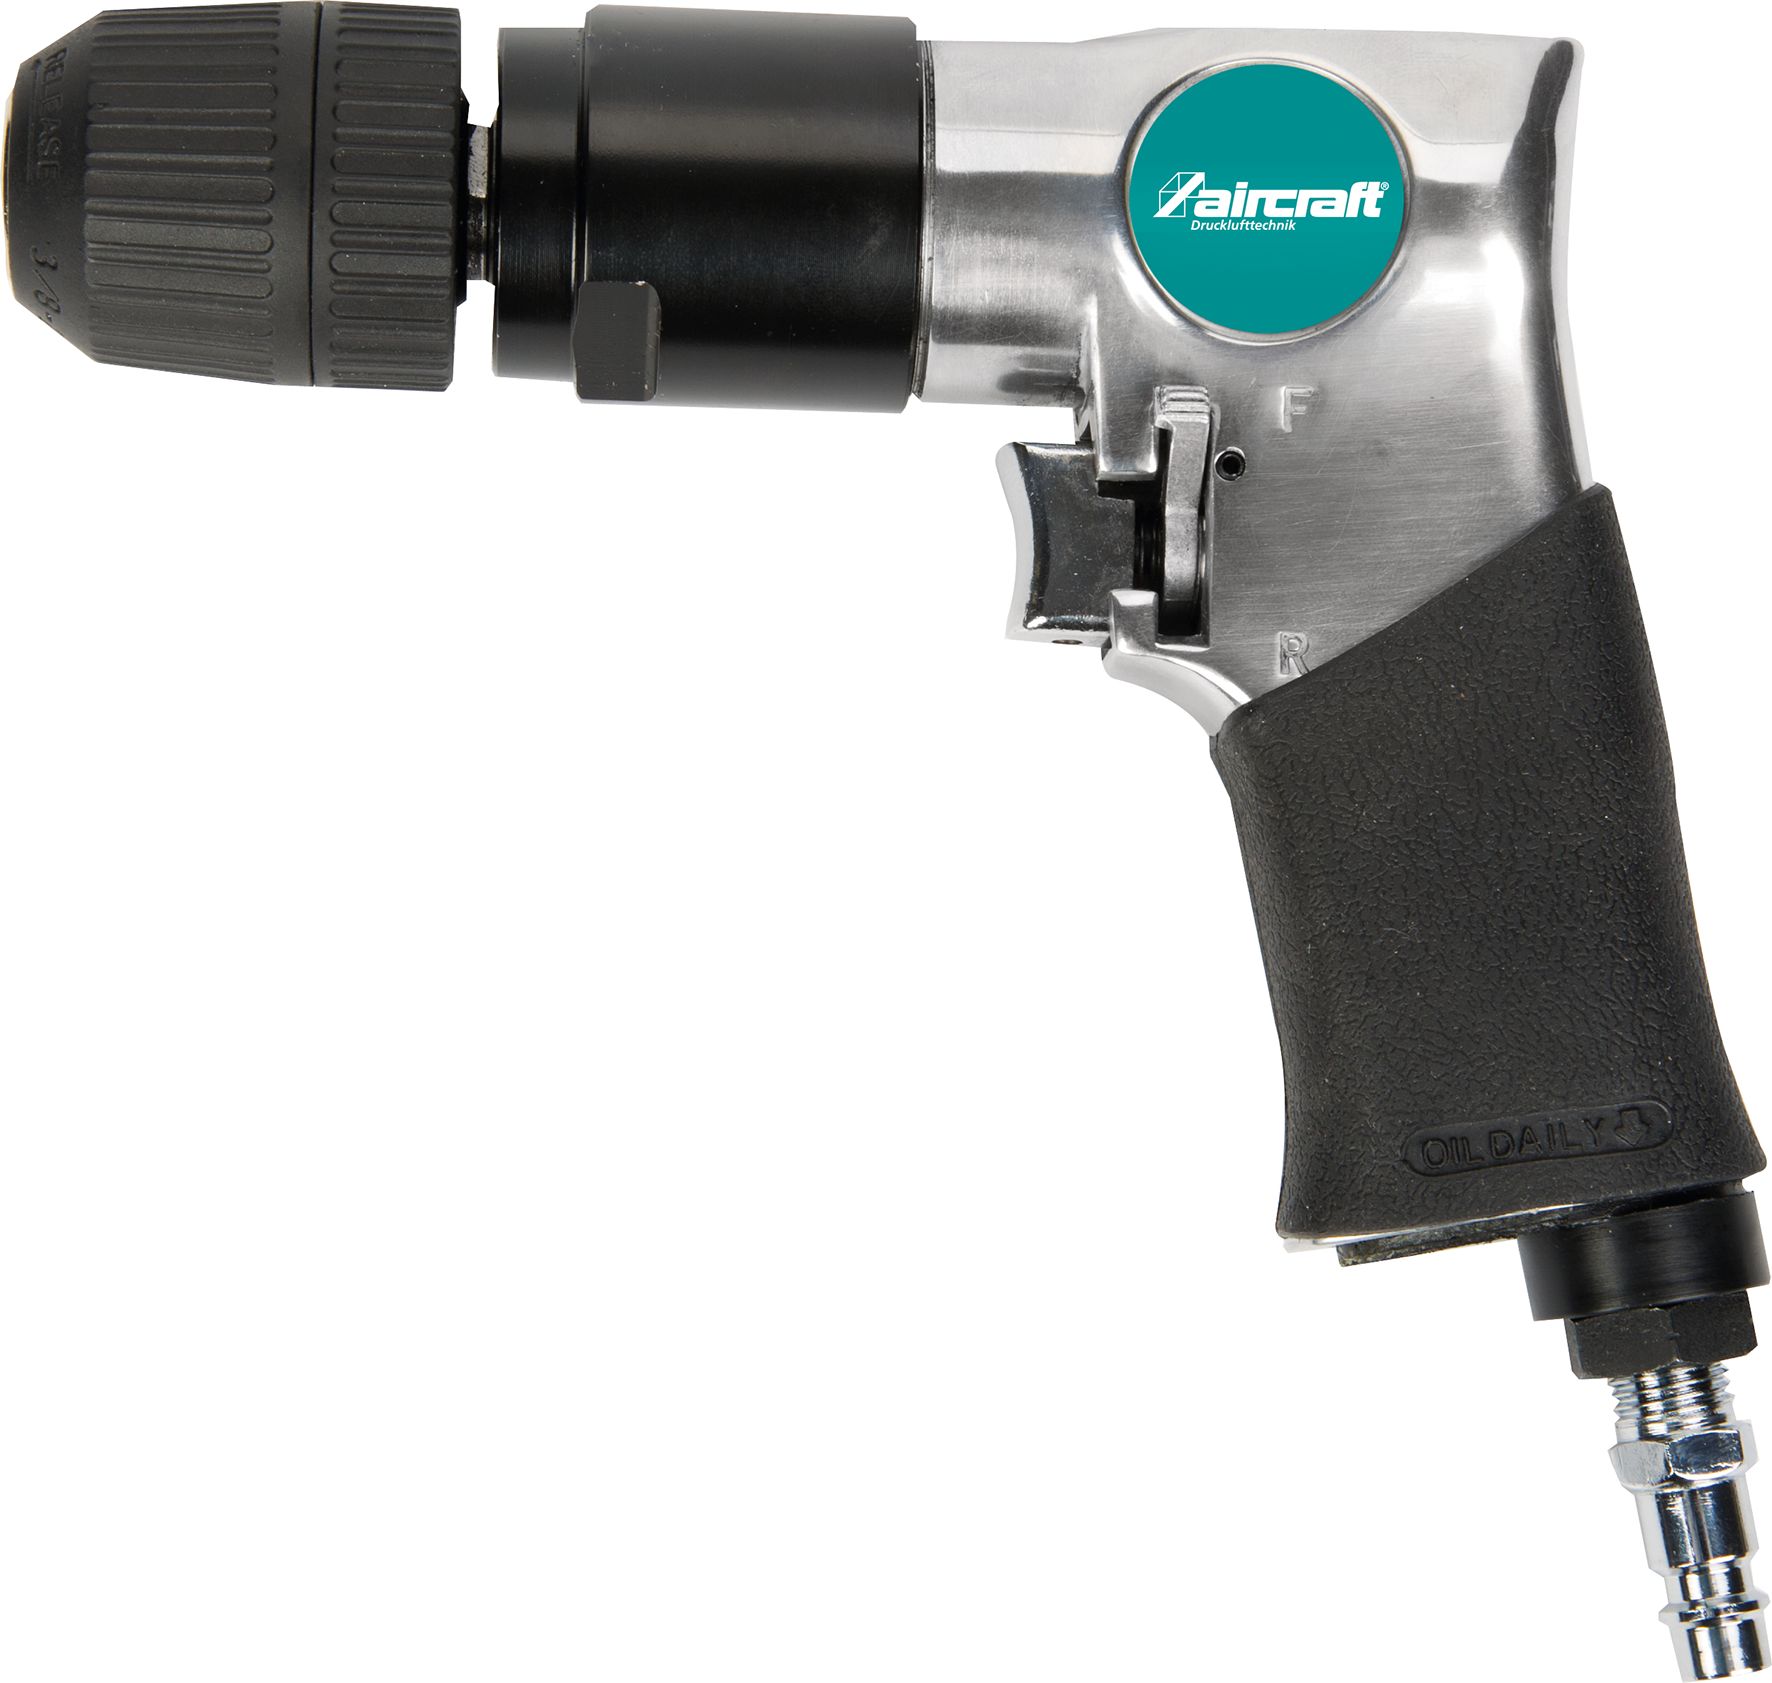 Perceuse pneumatique réversible automatique de 10 mm pour compresseur d’air avec raccord mâle de 1/4 18 000 tr/min 